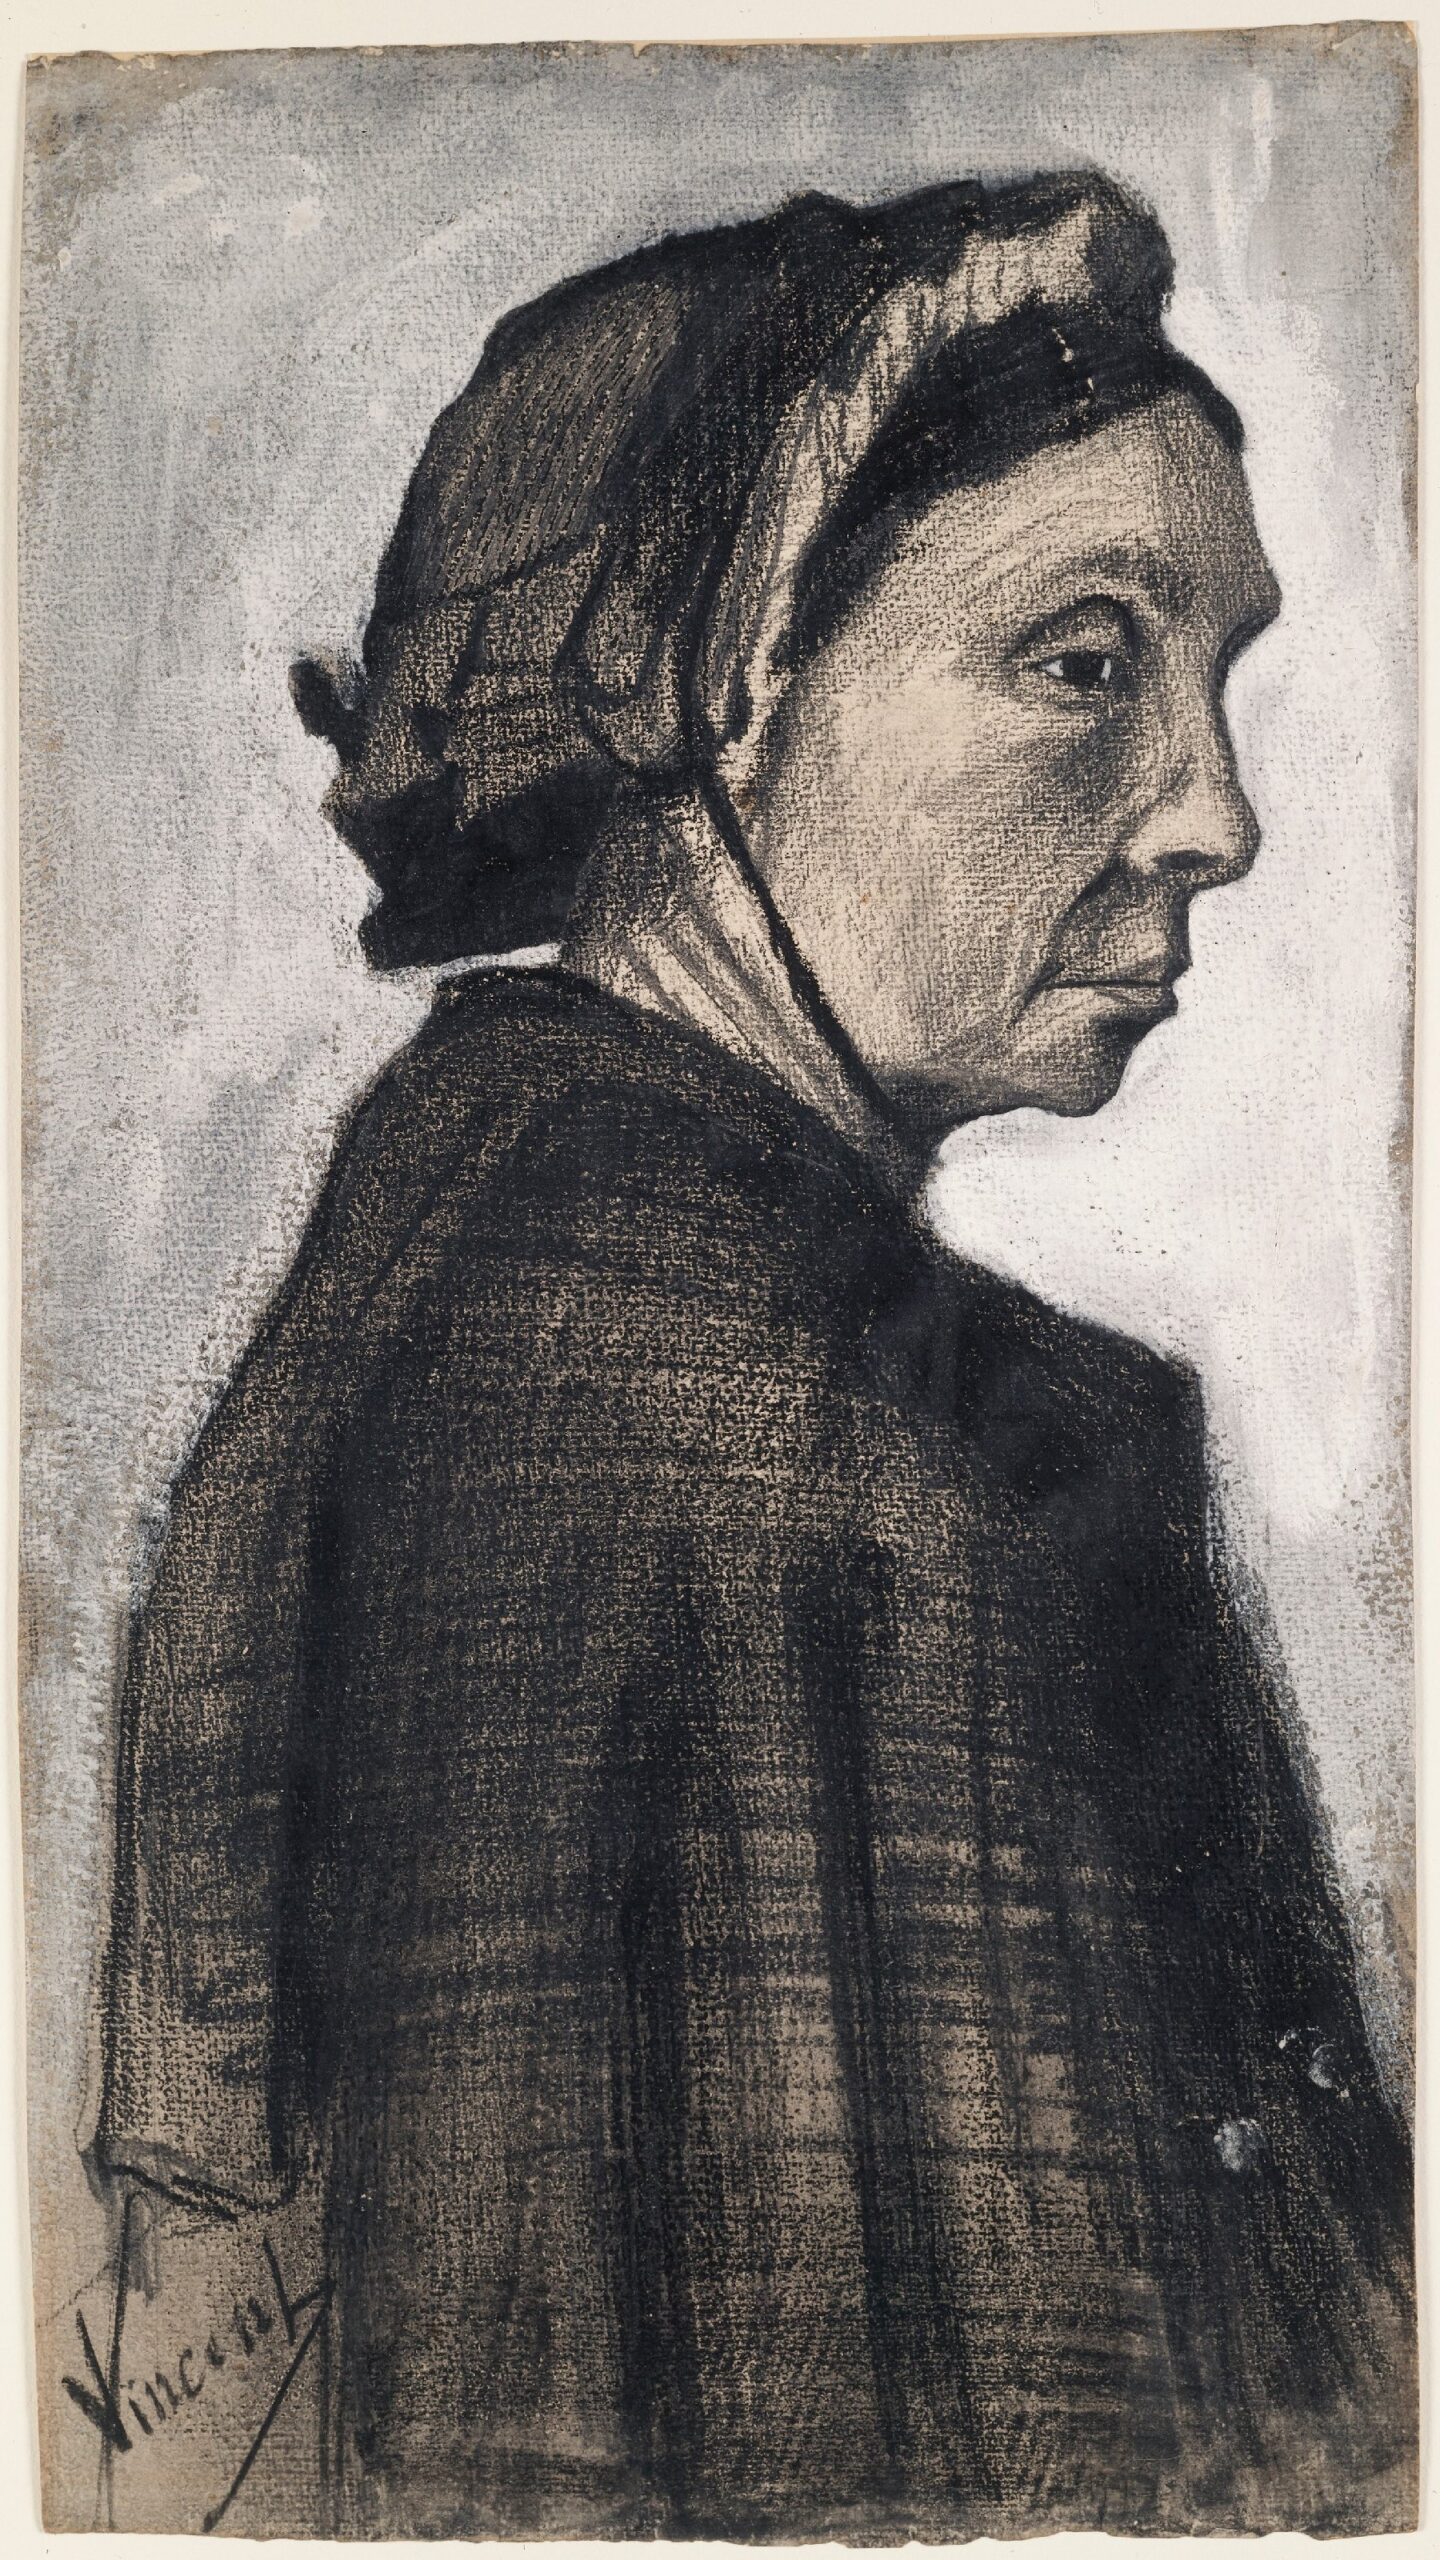 Kop van een vrouw Vincent van Gogh (1853 - 1890), Den Haag, december 1882-januari 1883